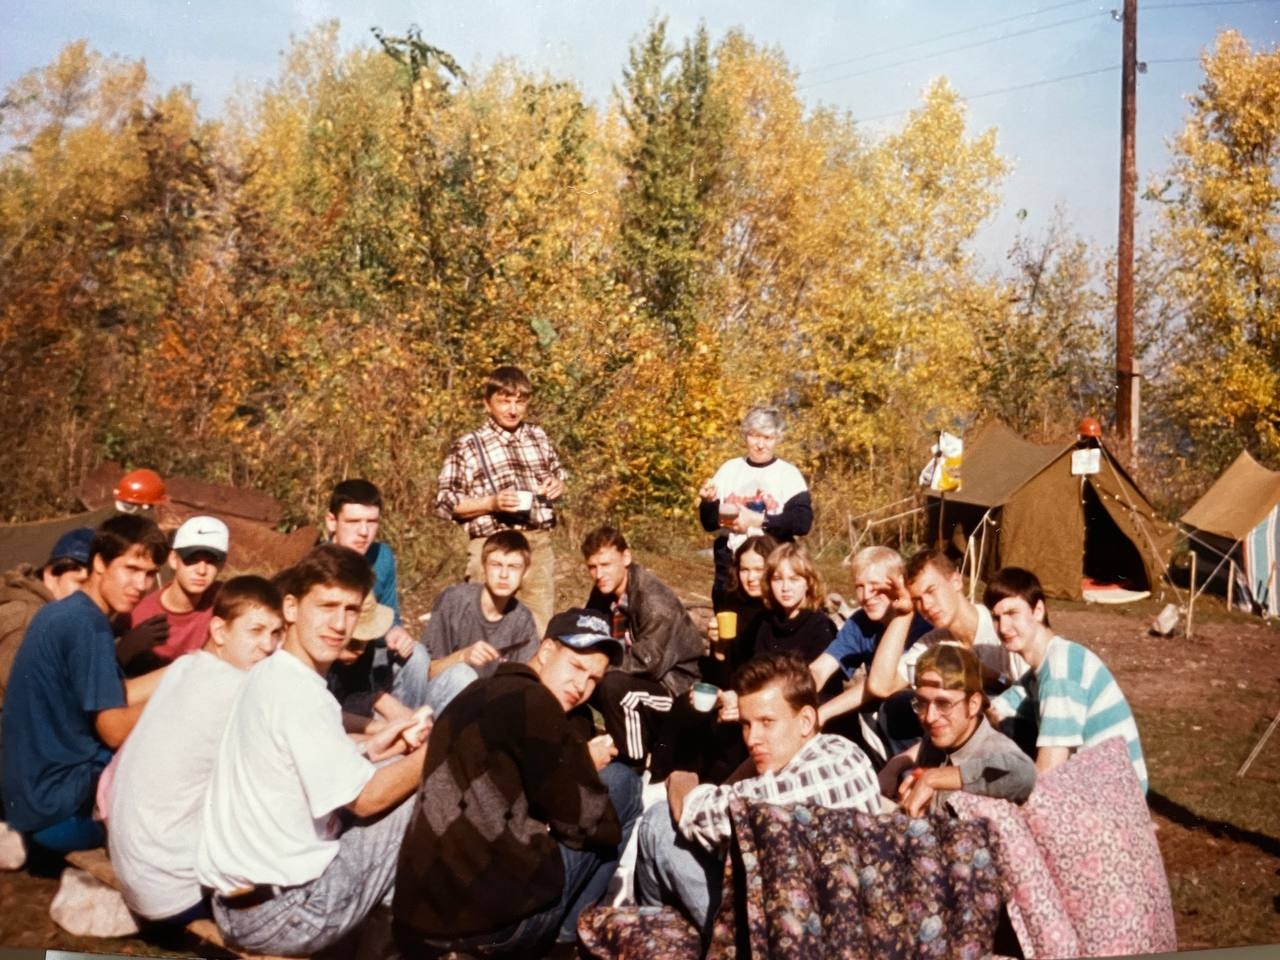 Михаил Дегтярев второй справа по верхней части круга
Фото предоставлено источником